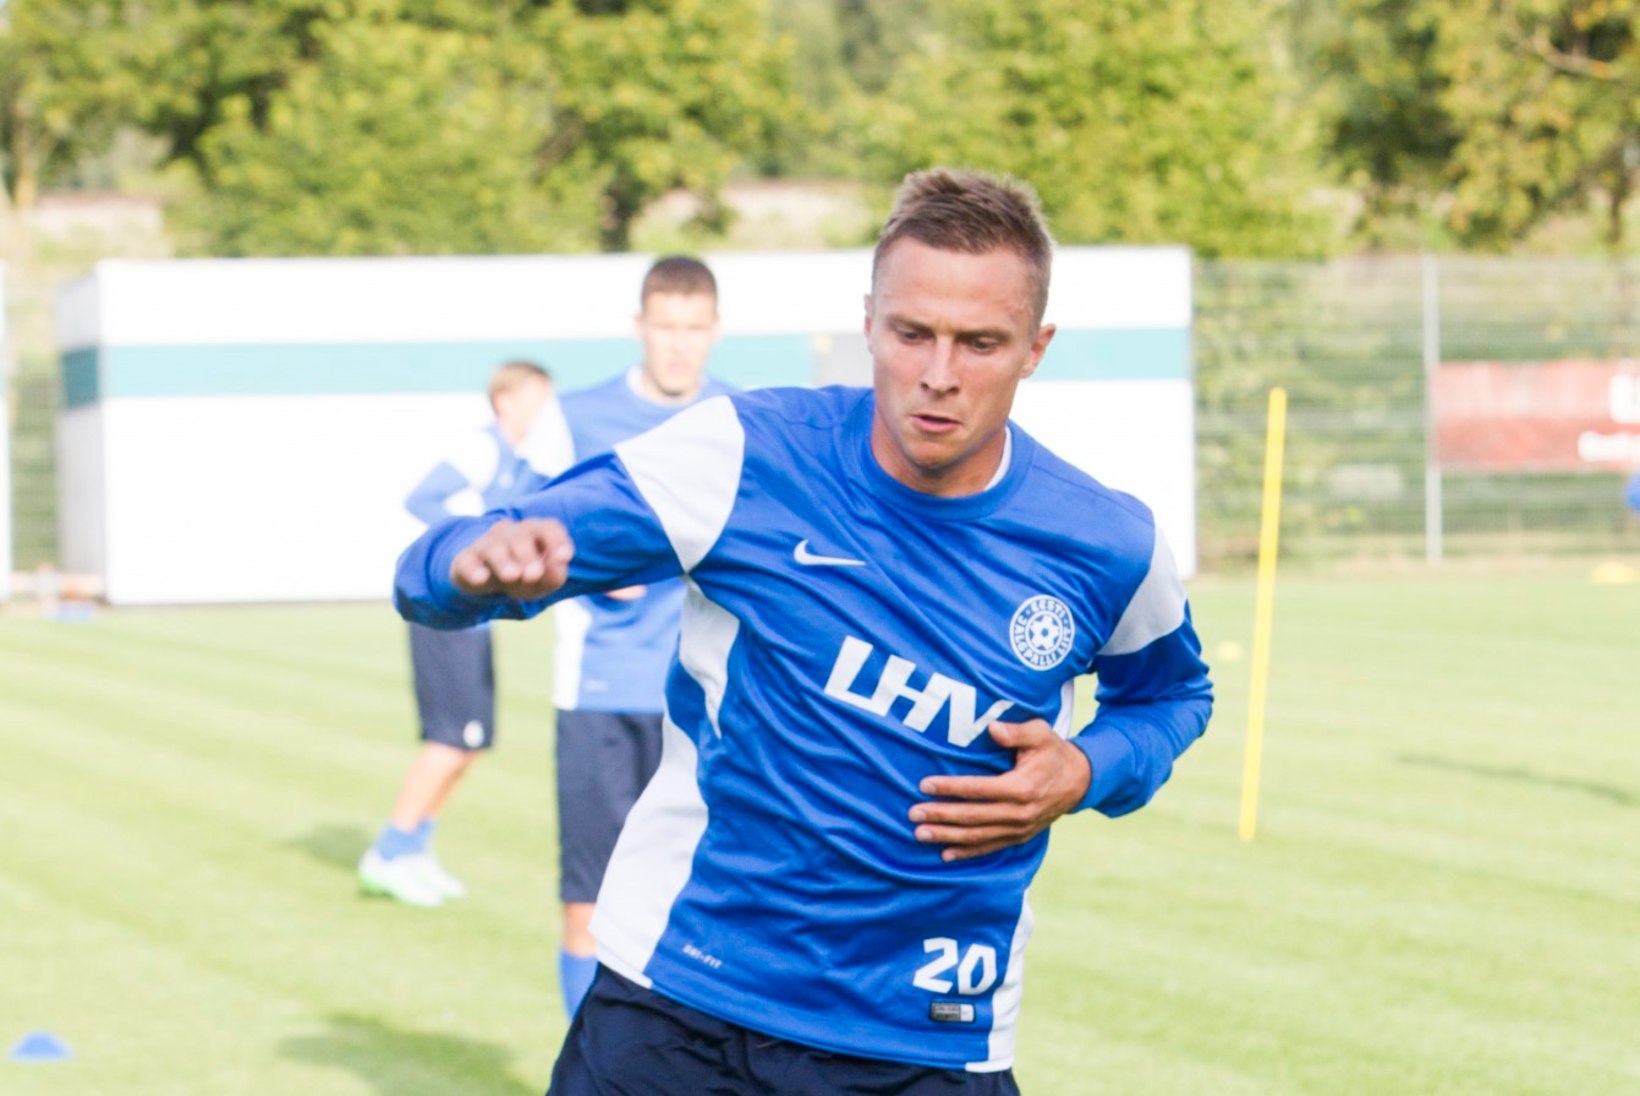 GALERII | Eesti jalgpallikoondis kogunes eelseisvateks EM-valikmängudeks